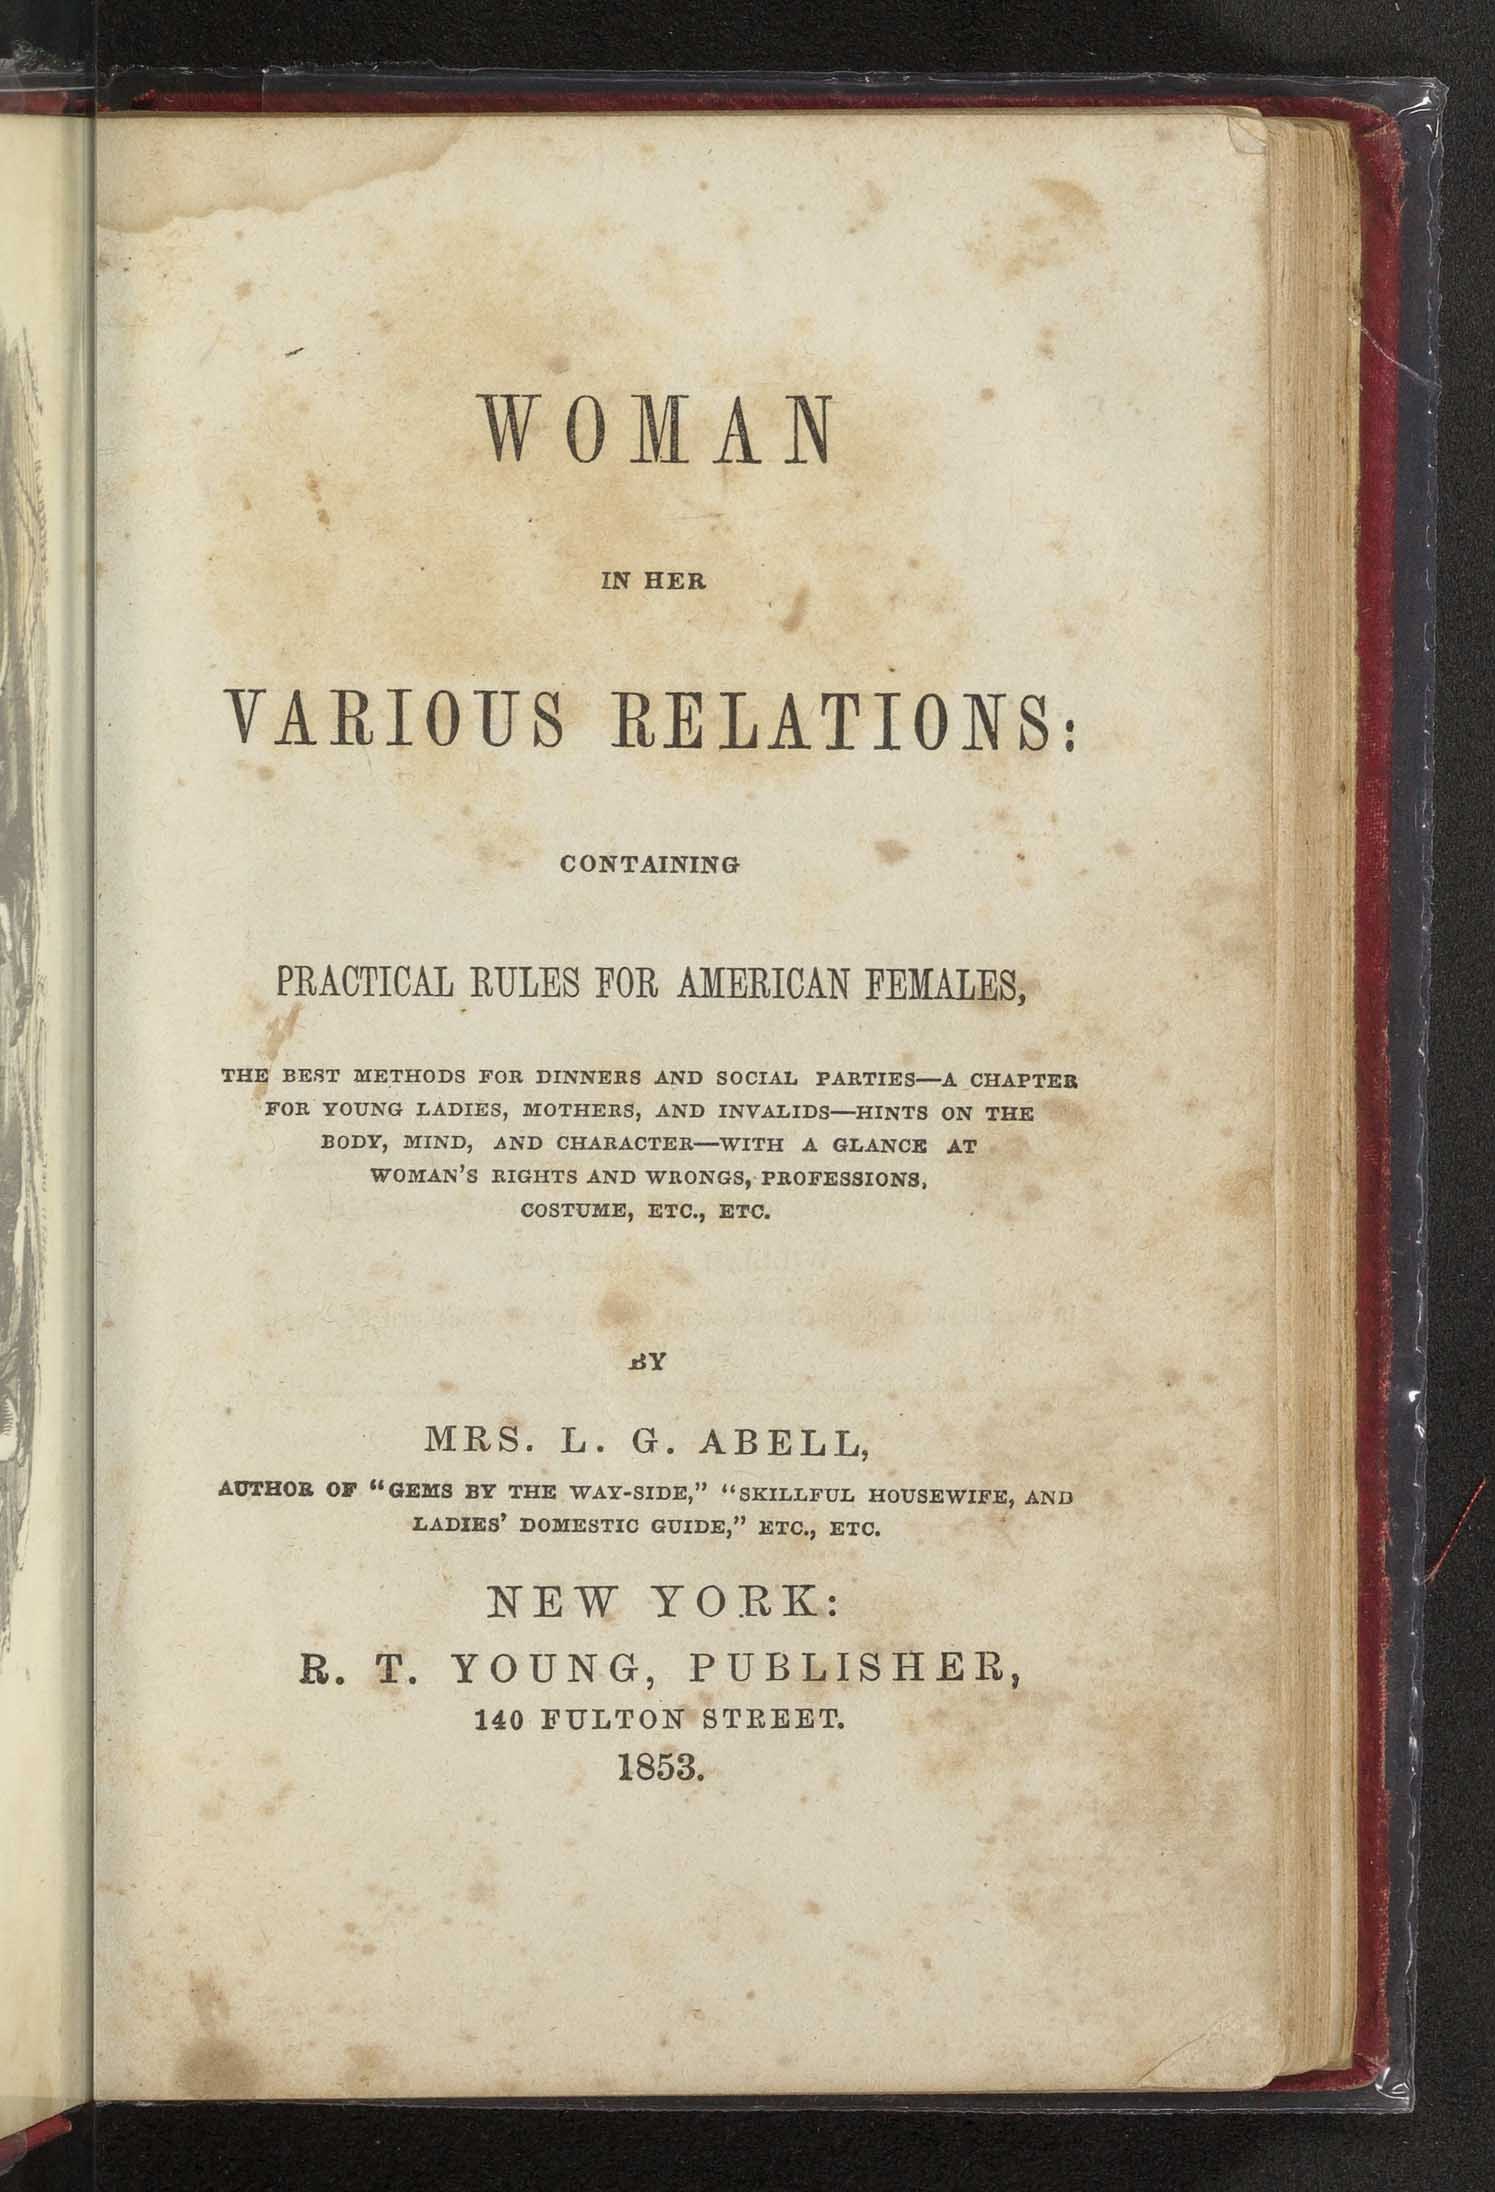 Women in her Various Relations